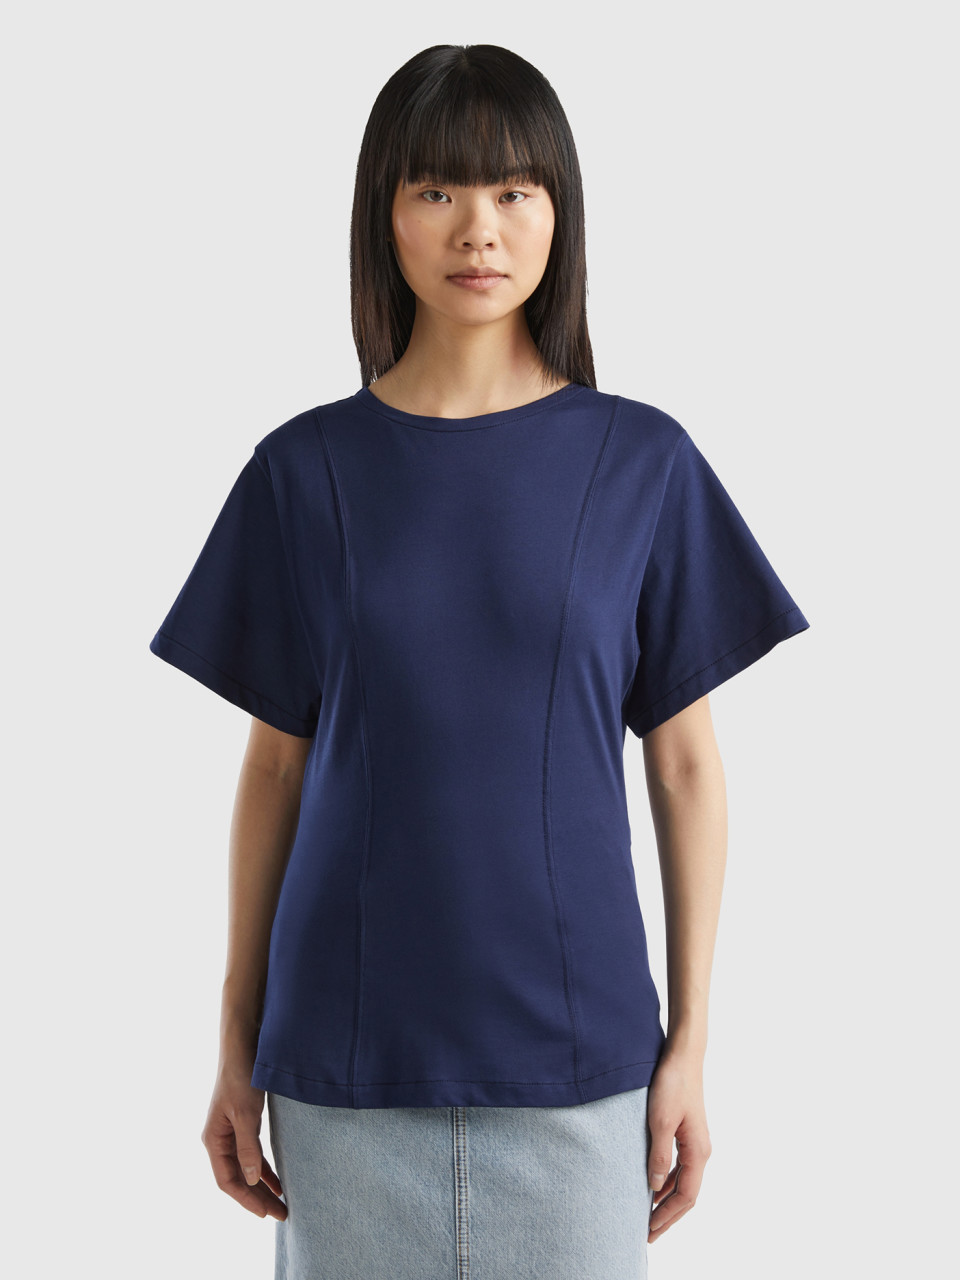 Benetton, Cálida Camiseta Entallada, Azul Oscuro, Mujer